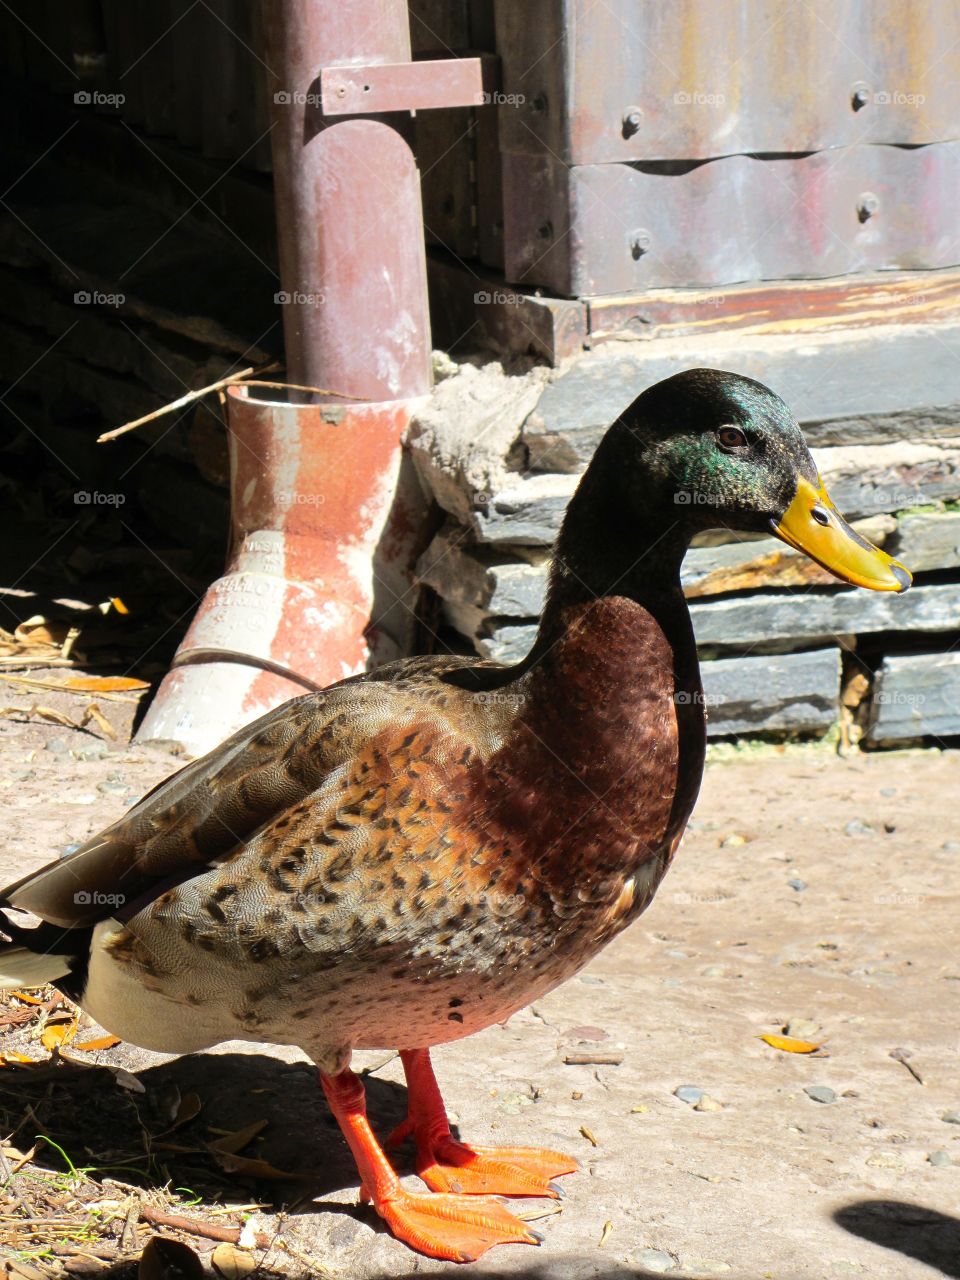 Mallard duck @ Disney's Animal Kingdom